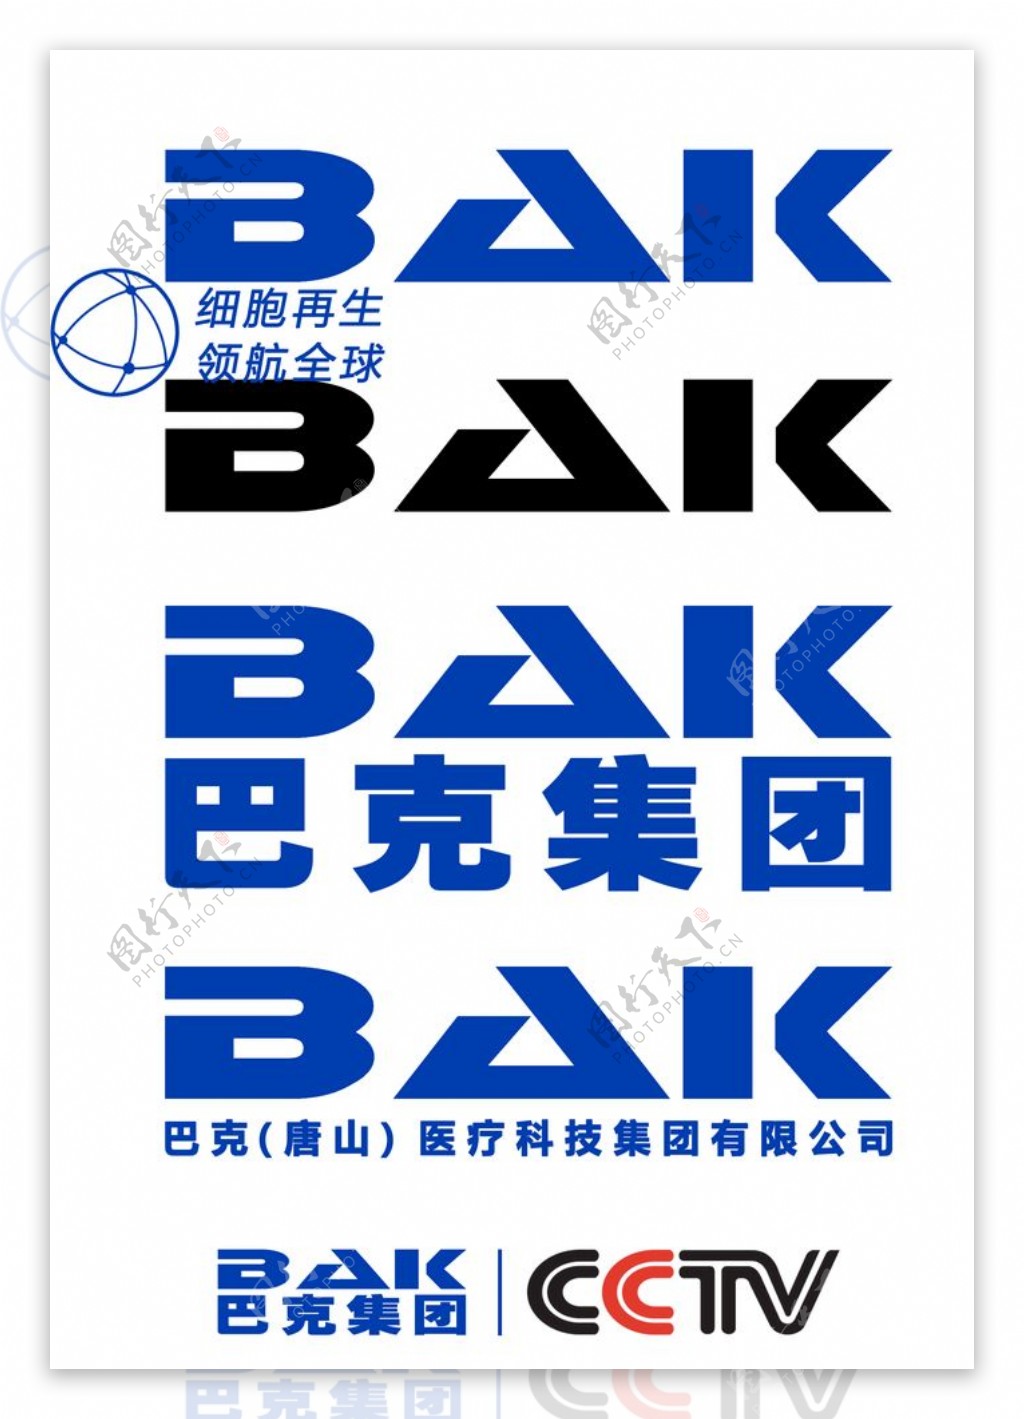 巴纳克logo图片